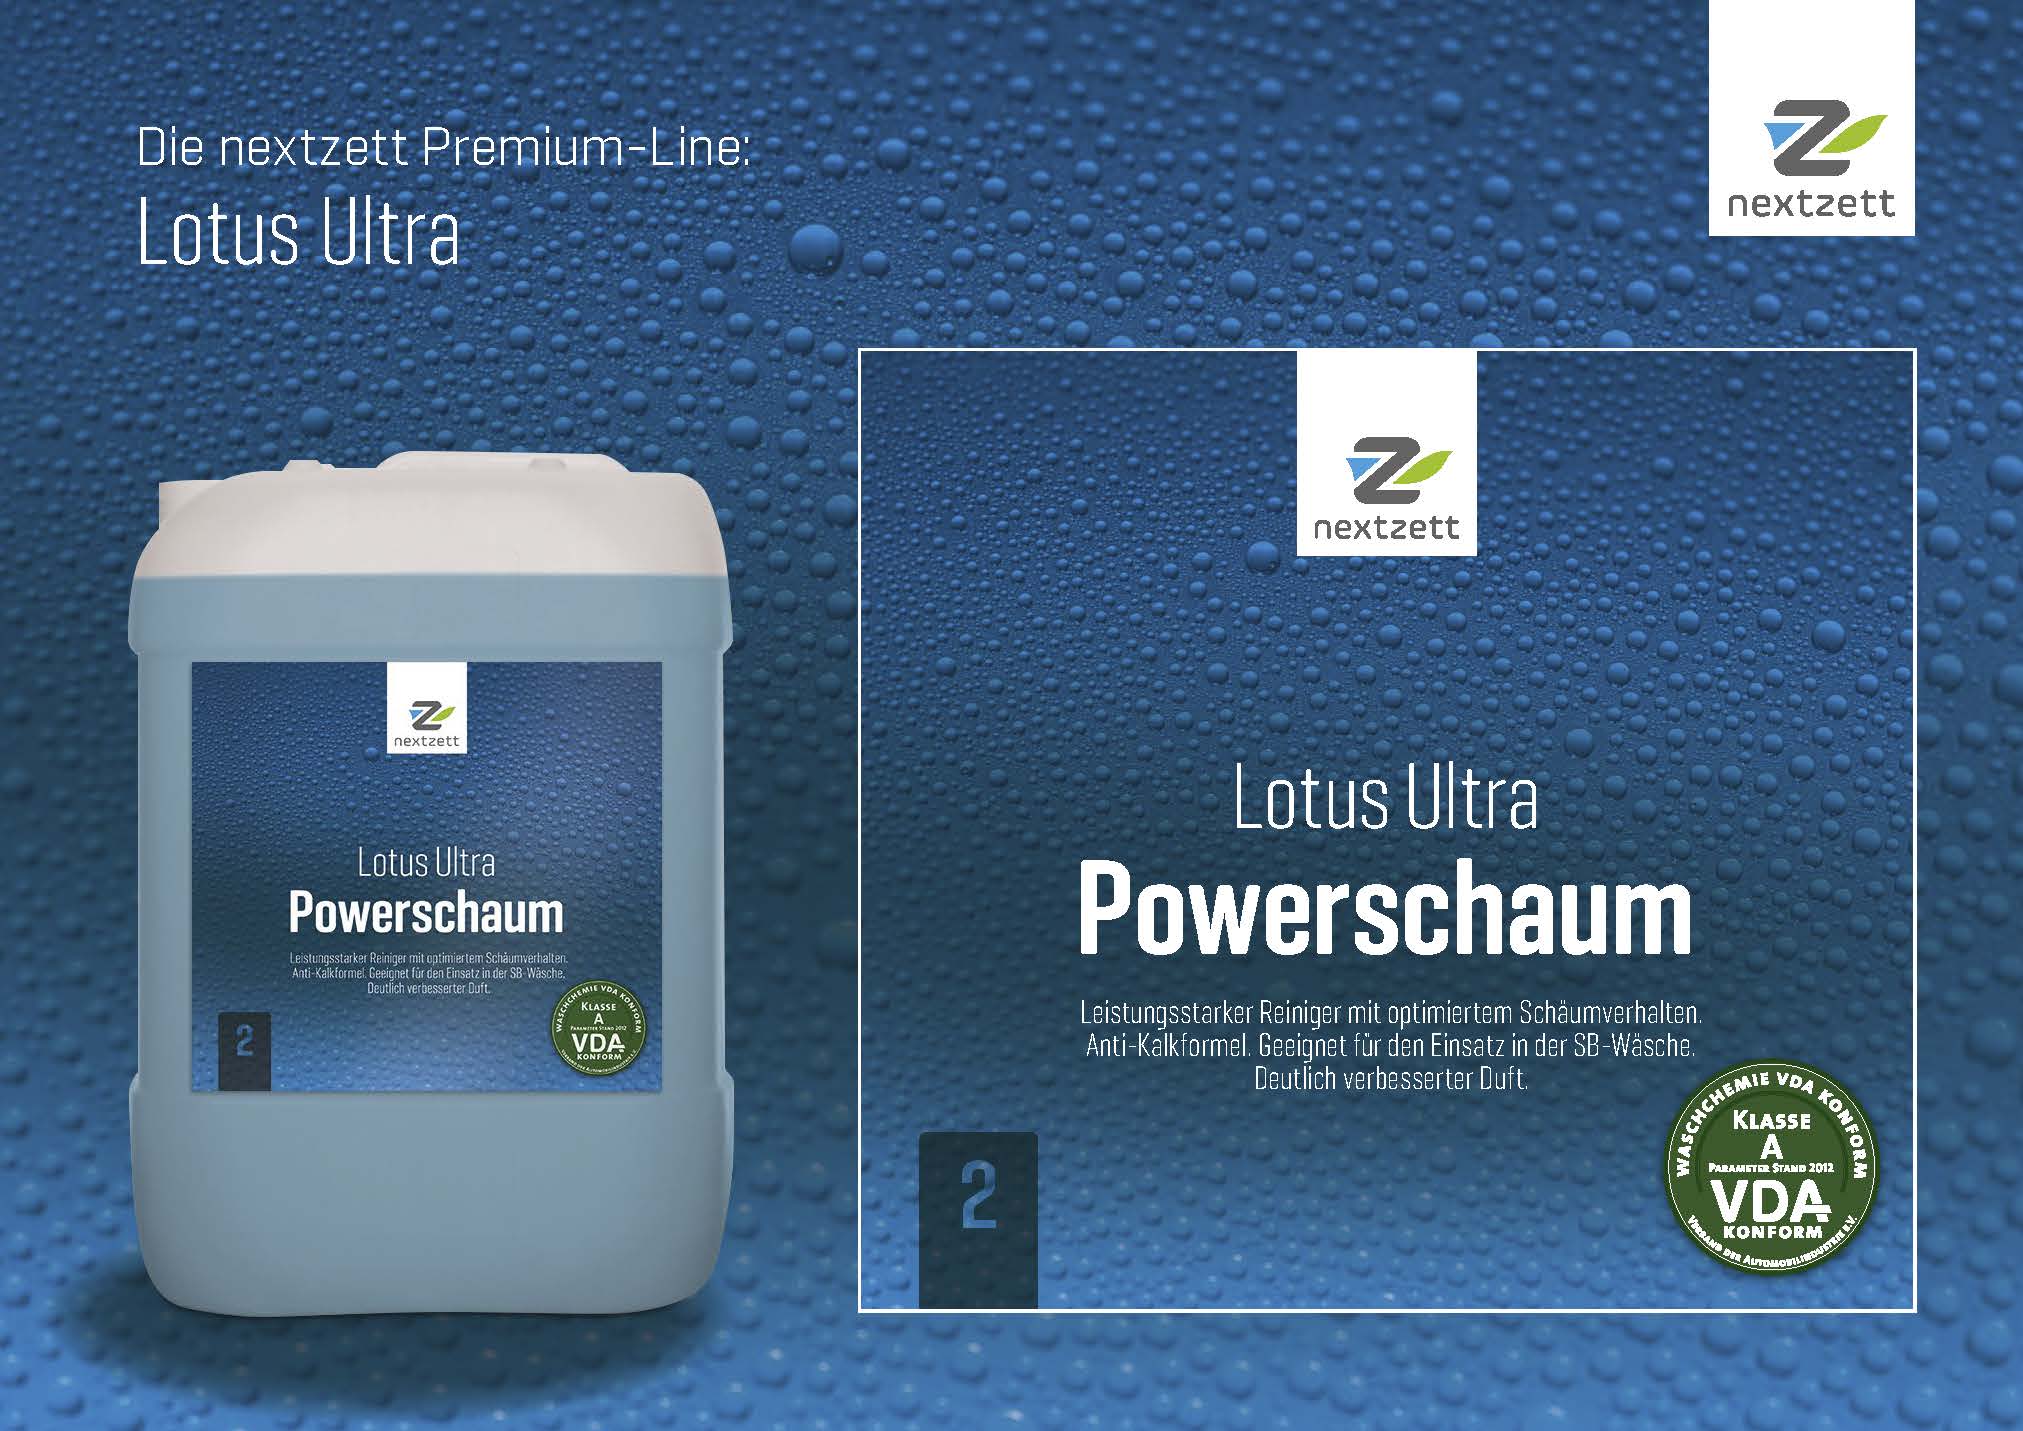 Nextzett Lotus Ultra Powerschaum - Flyer